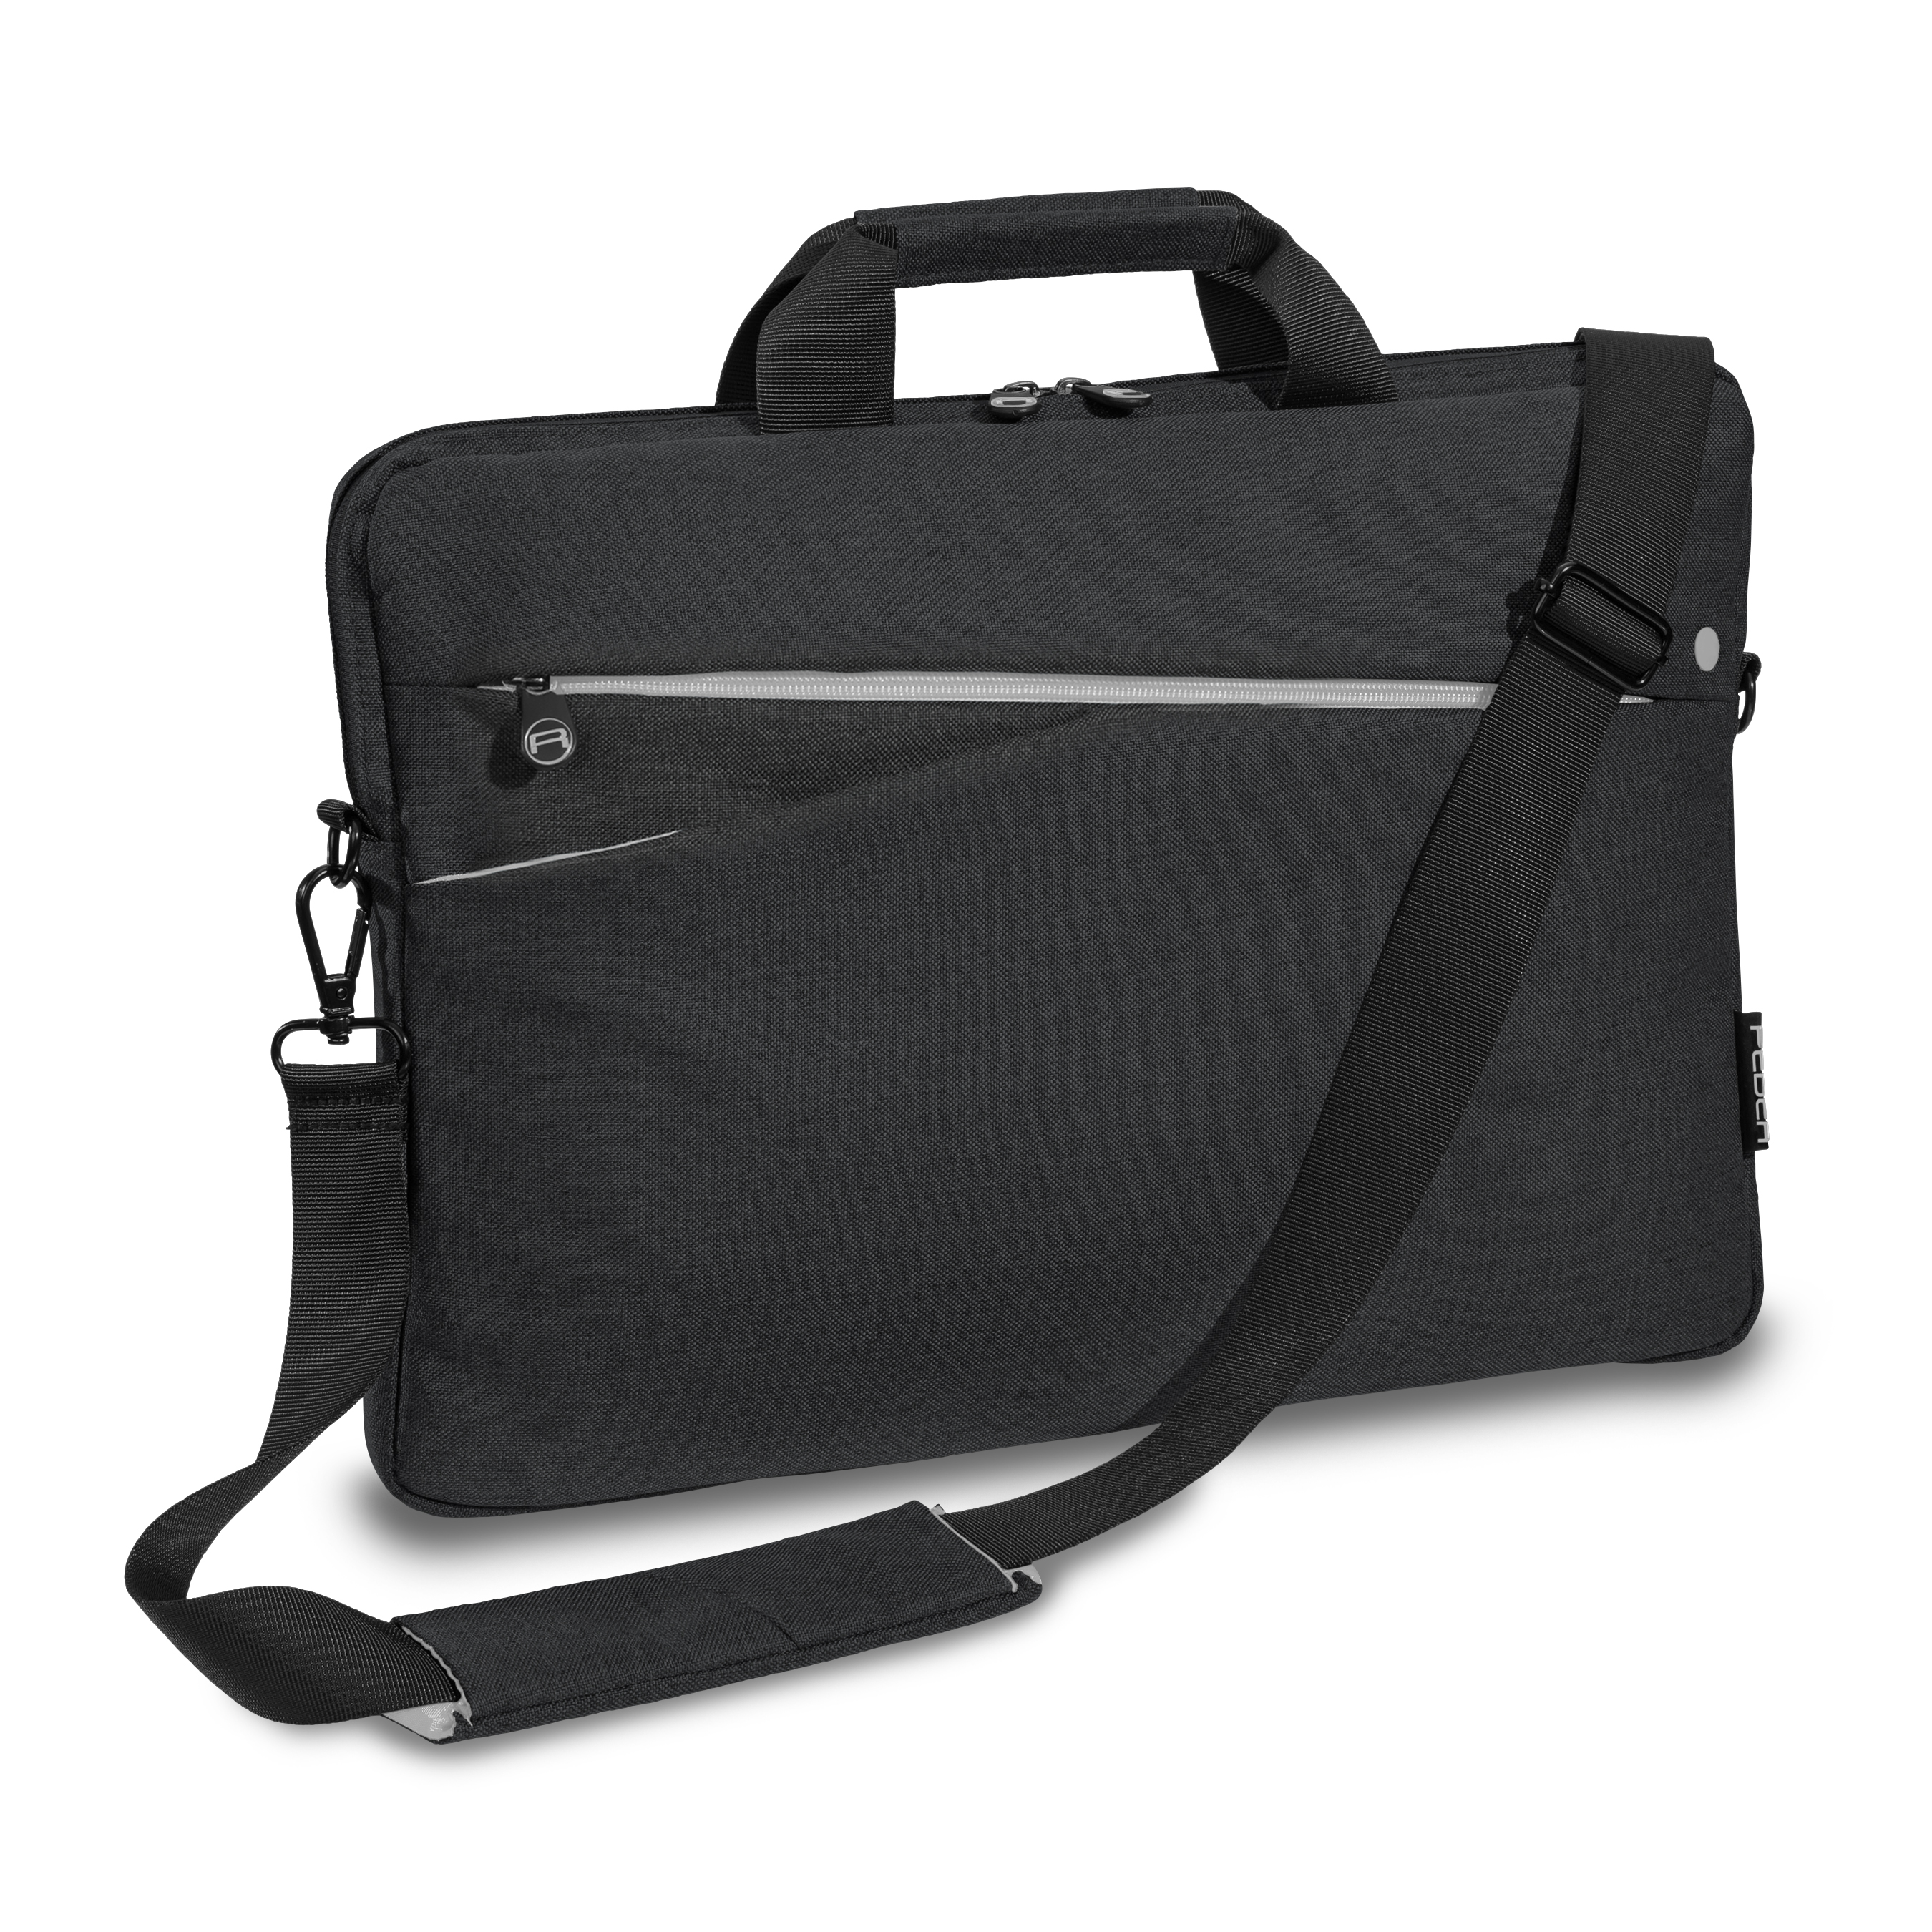 PEDEA Laptoptasche 17,3 Zoll (43,9cm) FASHION schwarz Notebook  Umhängetasche mit Schultergurt | bis 17,3 Zoll |Laptop-Taschen  |Laptop-Zubehör |